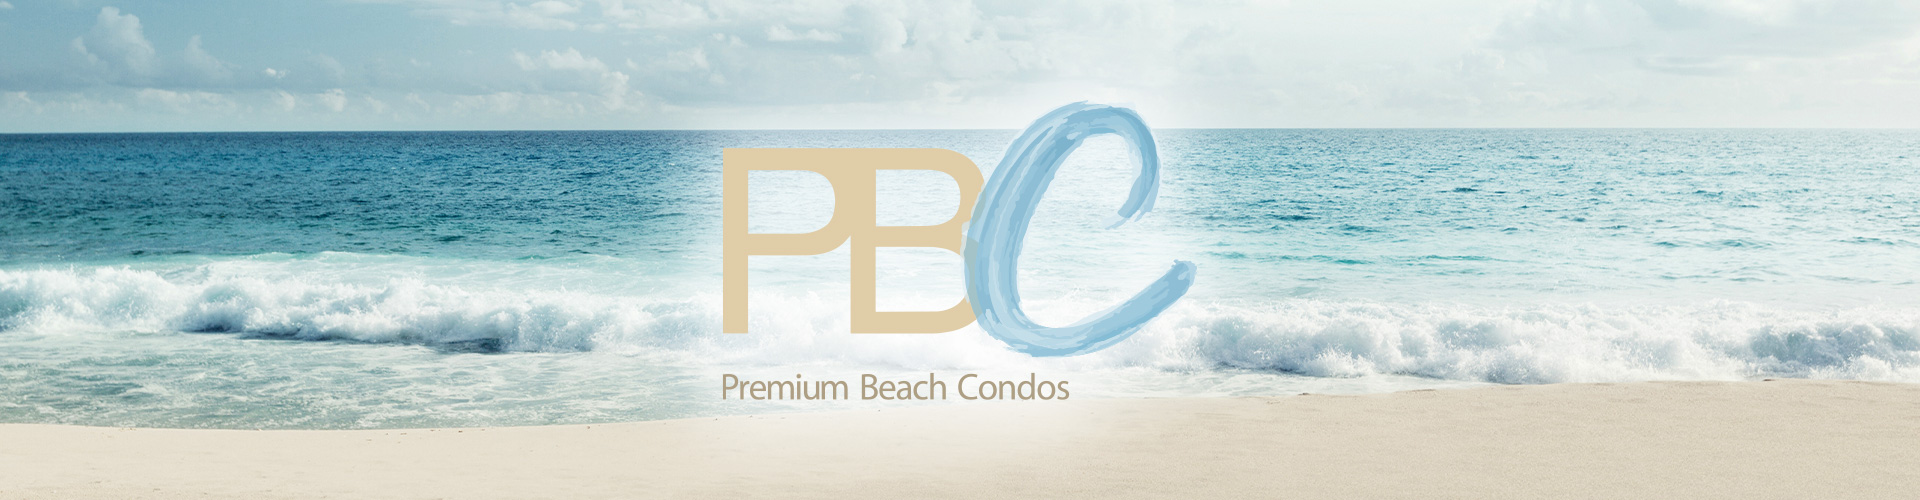  Premium Beach Condos Banner